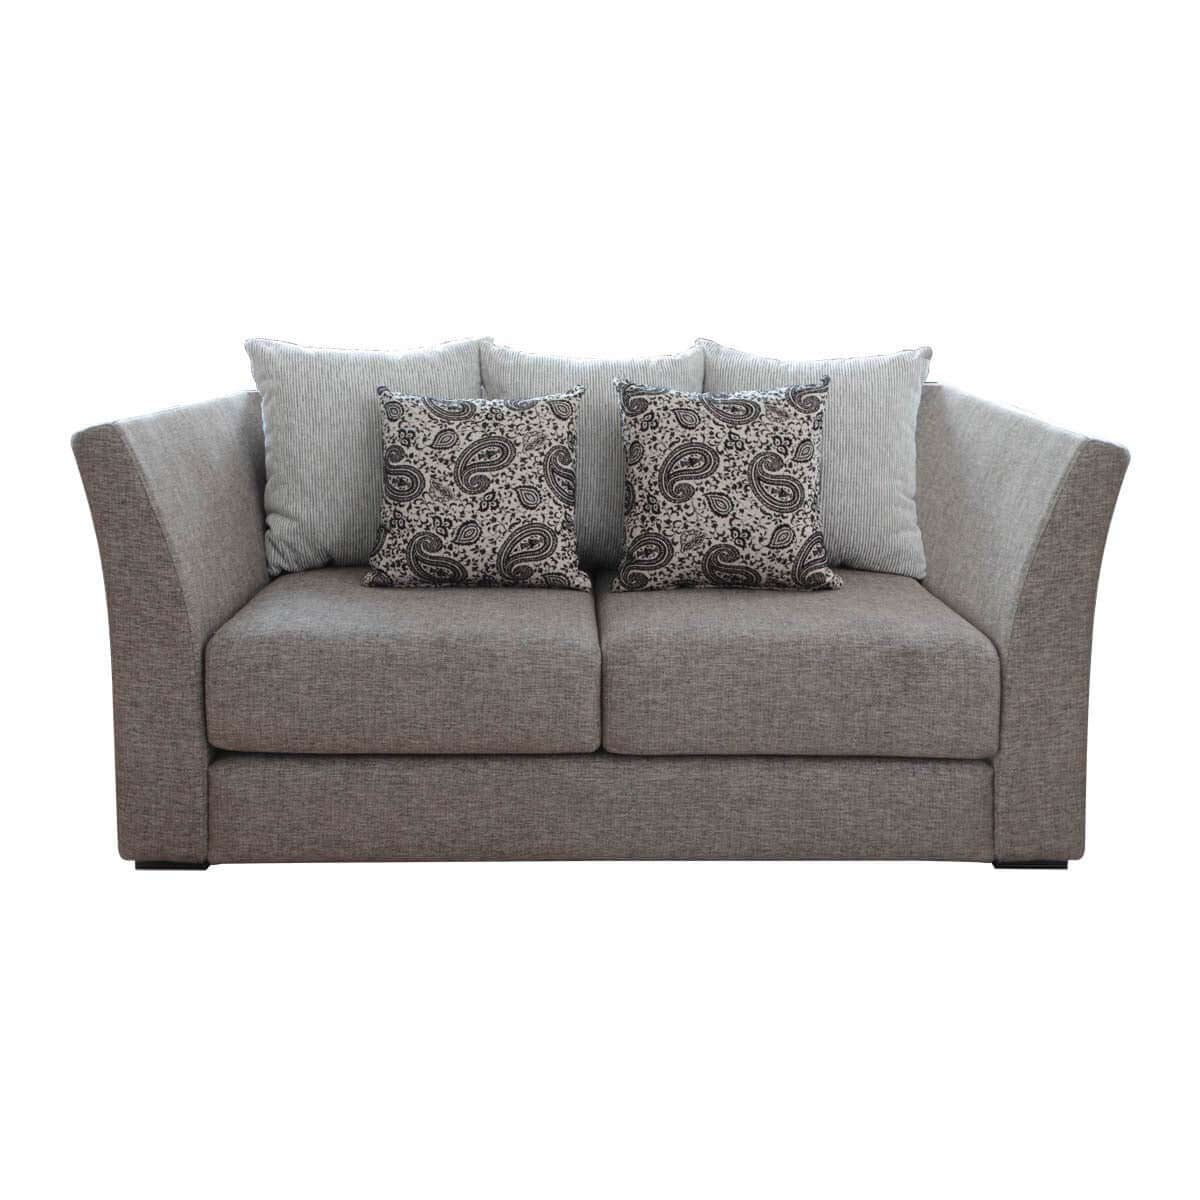 nara 2 seat elegant and simple sofa